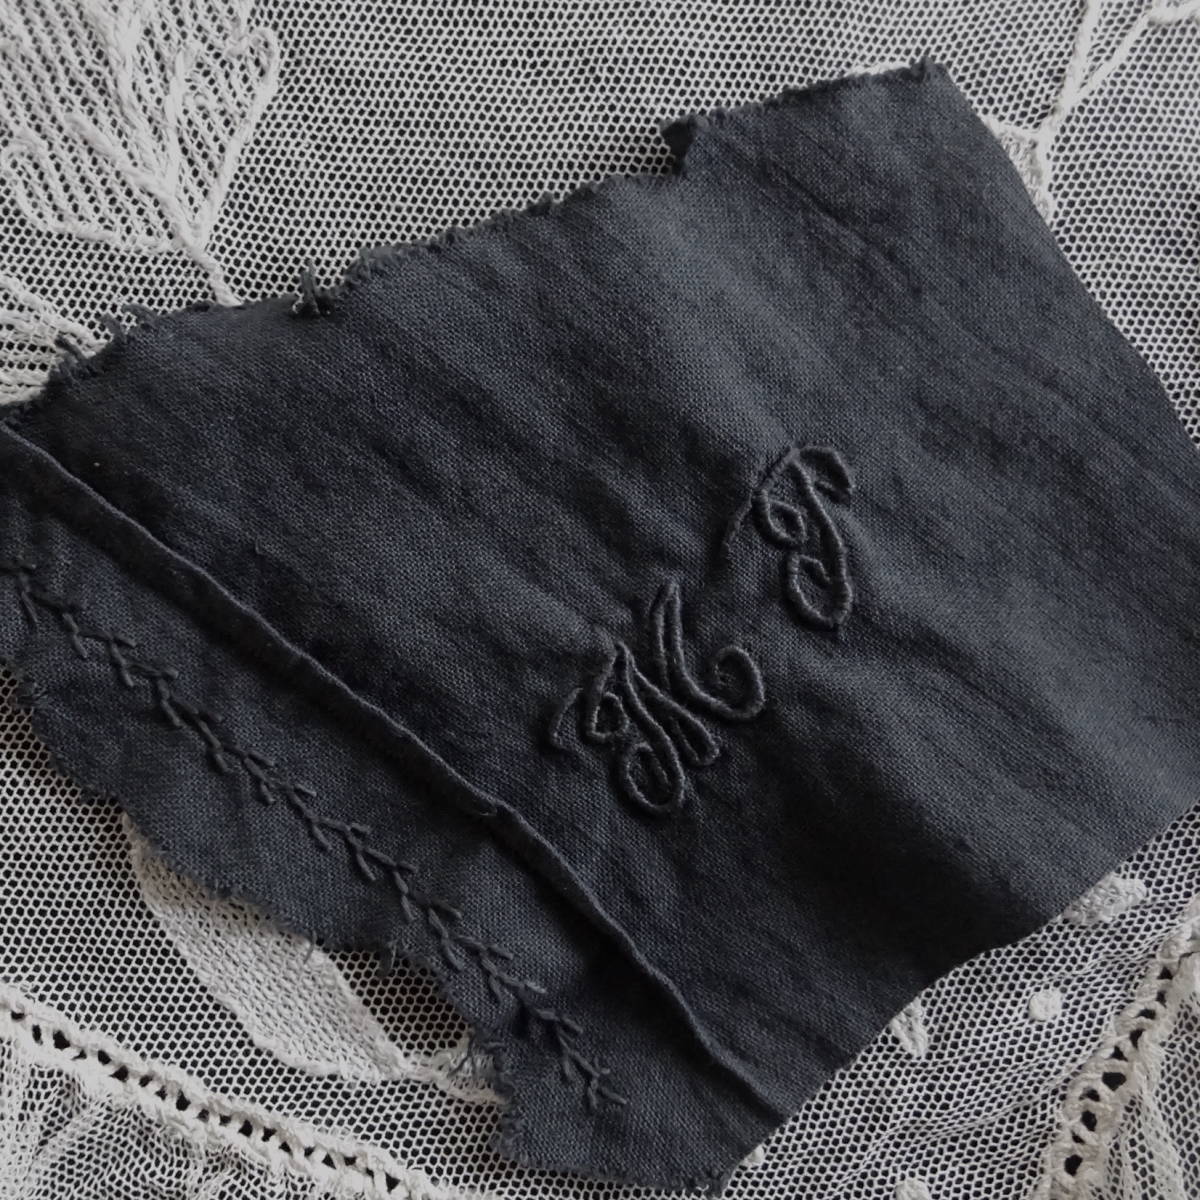 20世紀初期 フランス 立体 はぎれ 漆黒 刺繍 テーブル ナプキン モノグラム クロス 布材 縫製 古布 民藝 工藝 美術 服飾 半物 アンティーク